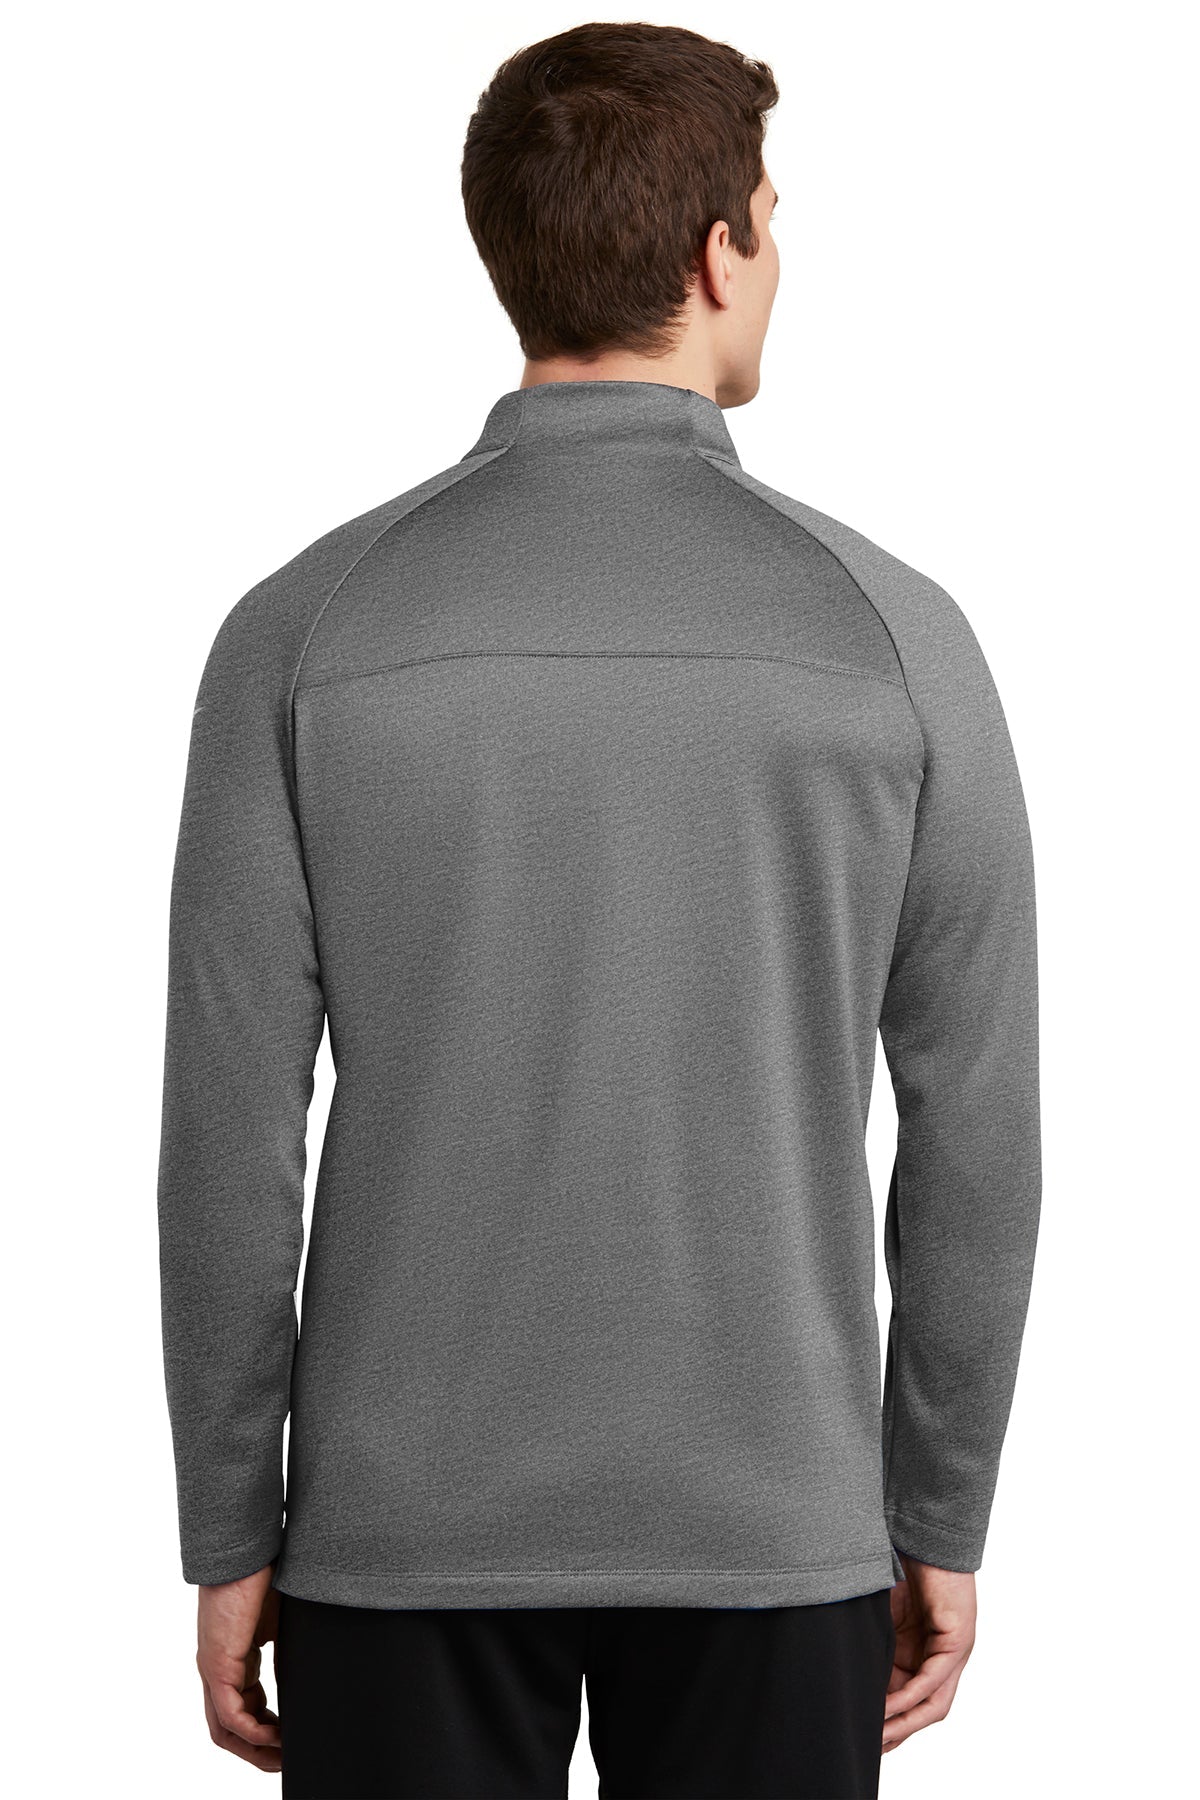 Nike ThermaFIT Custom Fleece Quarter Zips, Dark Grey Heather